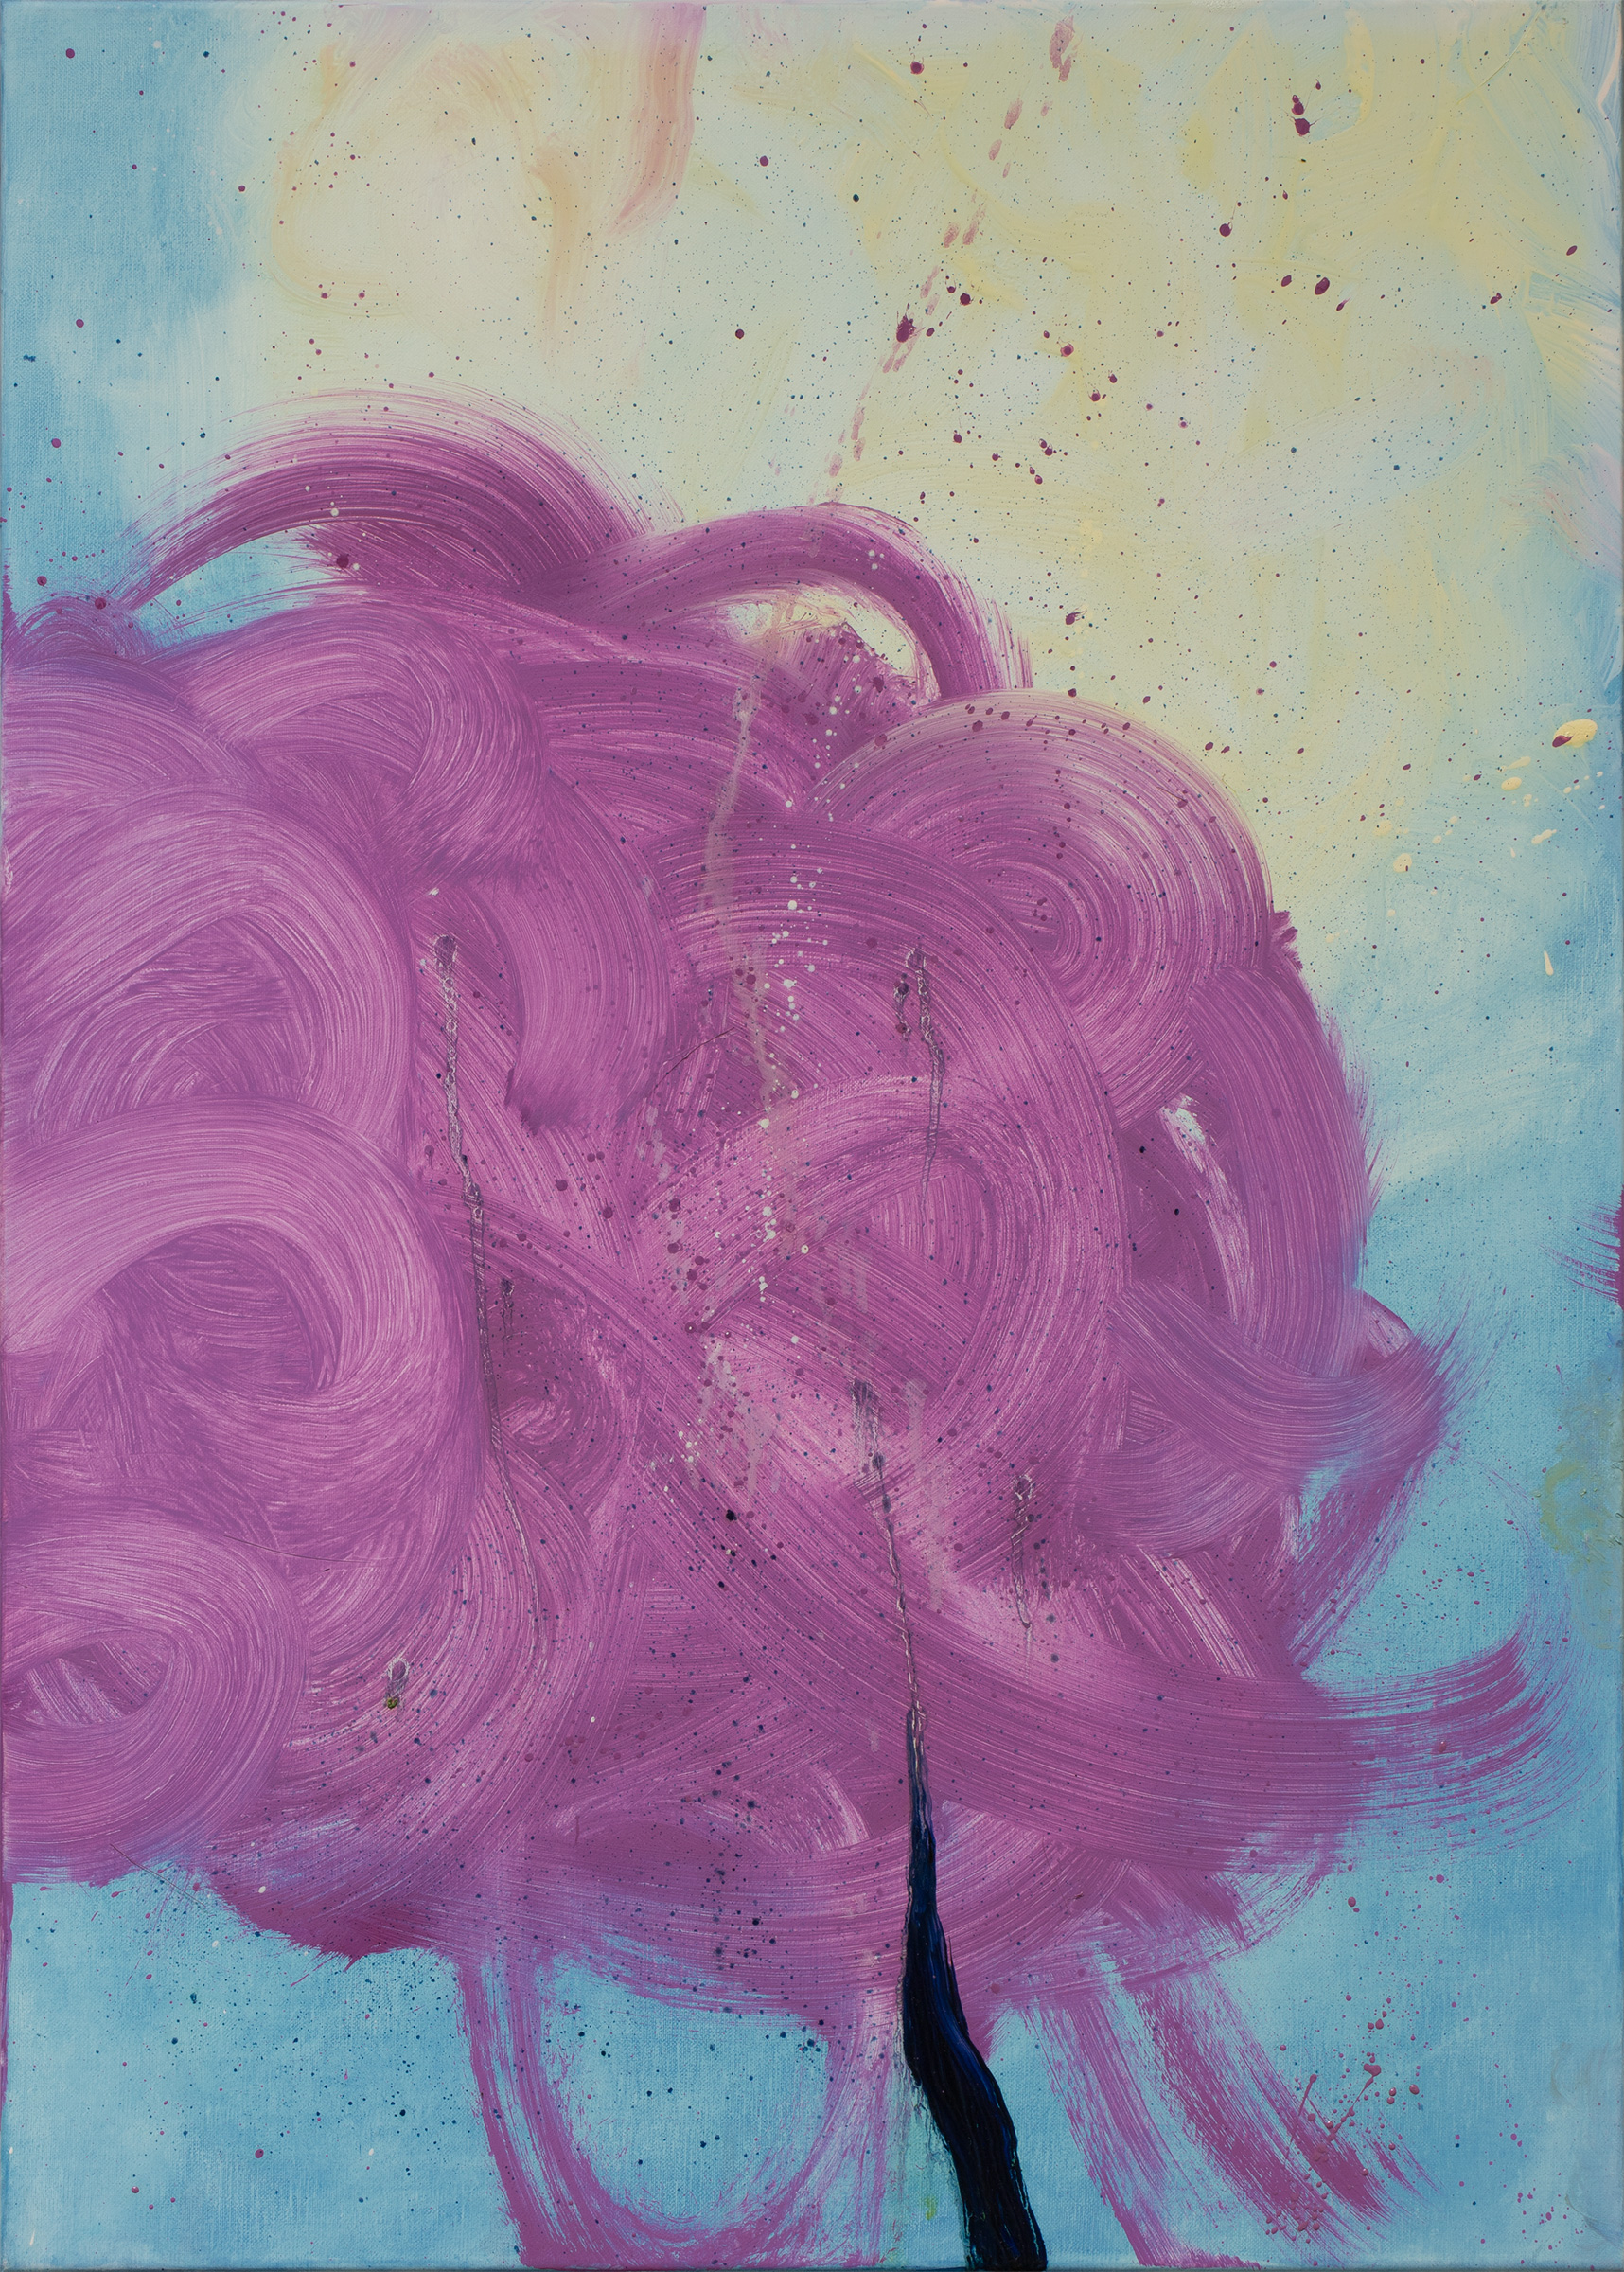 Cercando nuvole dentro di me n. 3, 2022 | Oil on canvas, 70 x 50 cm